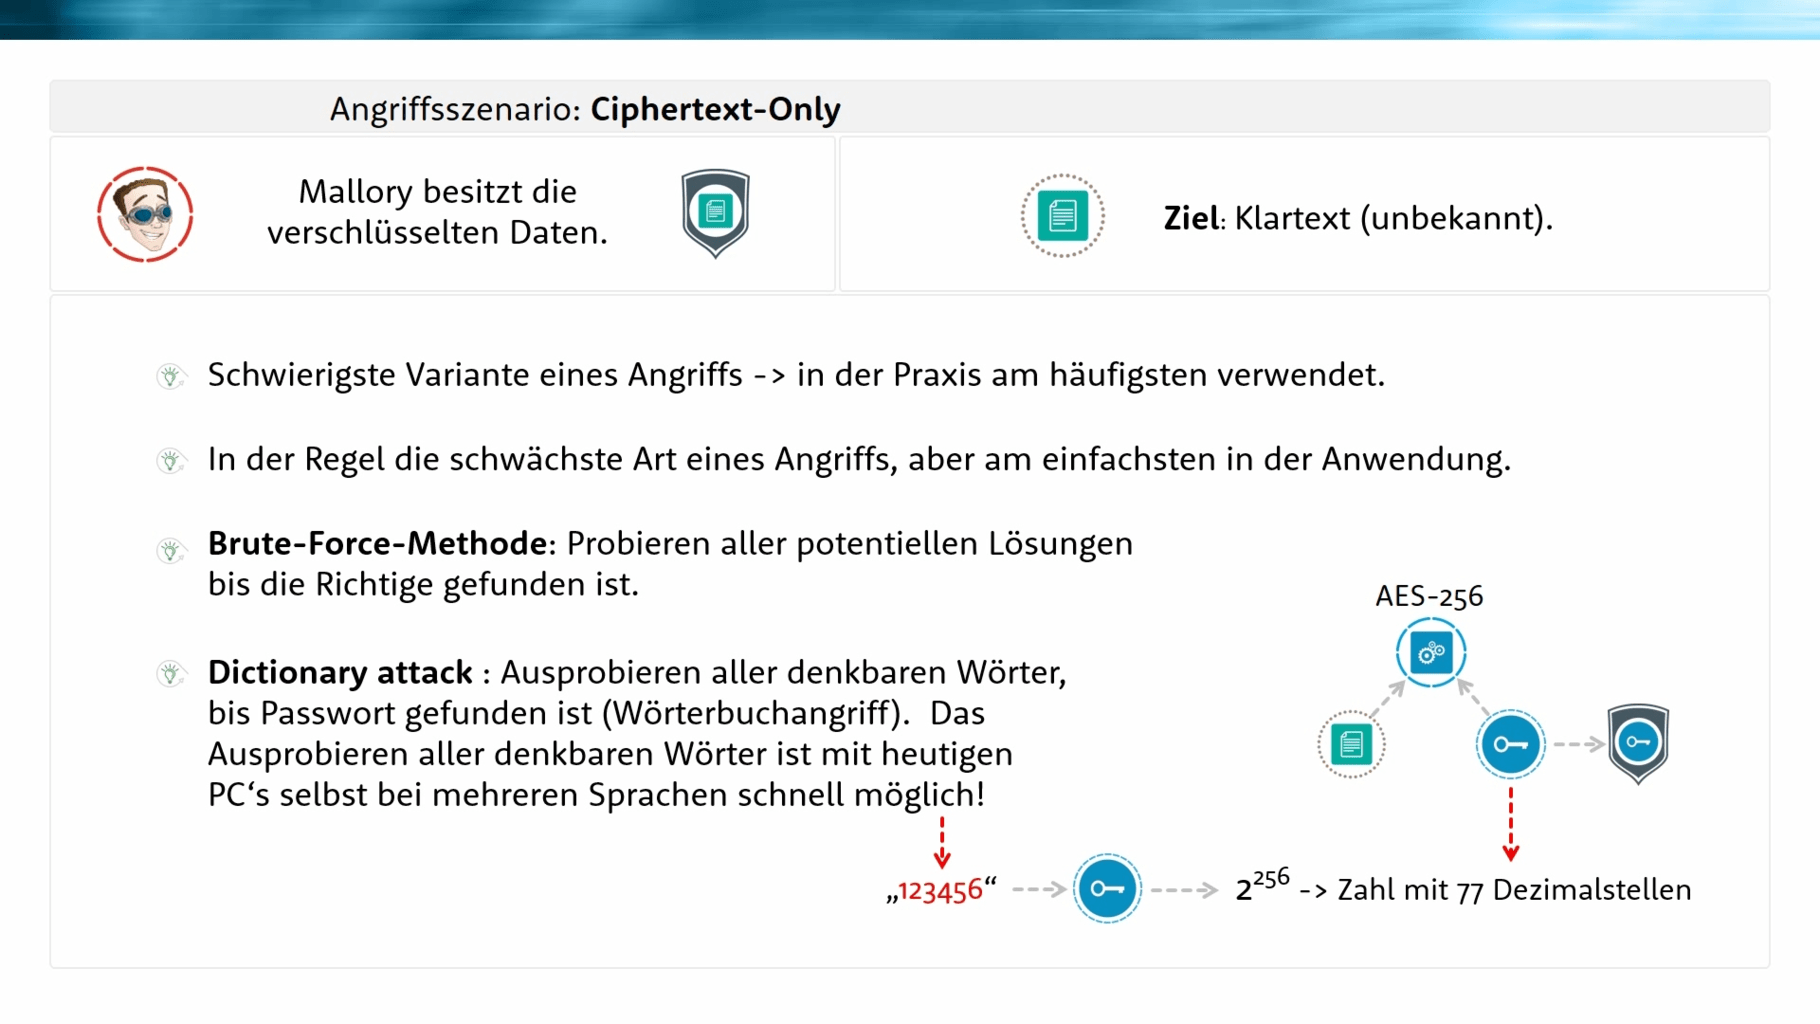 Angriffsszenario Ciphertext-Only